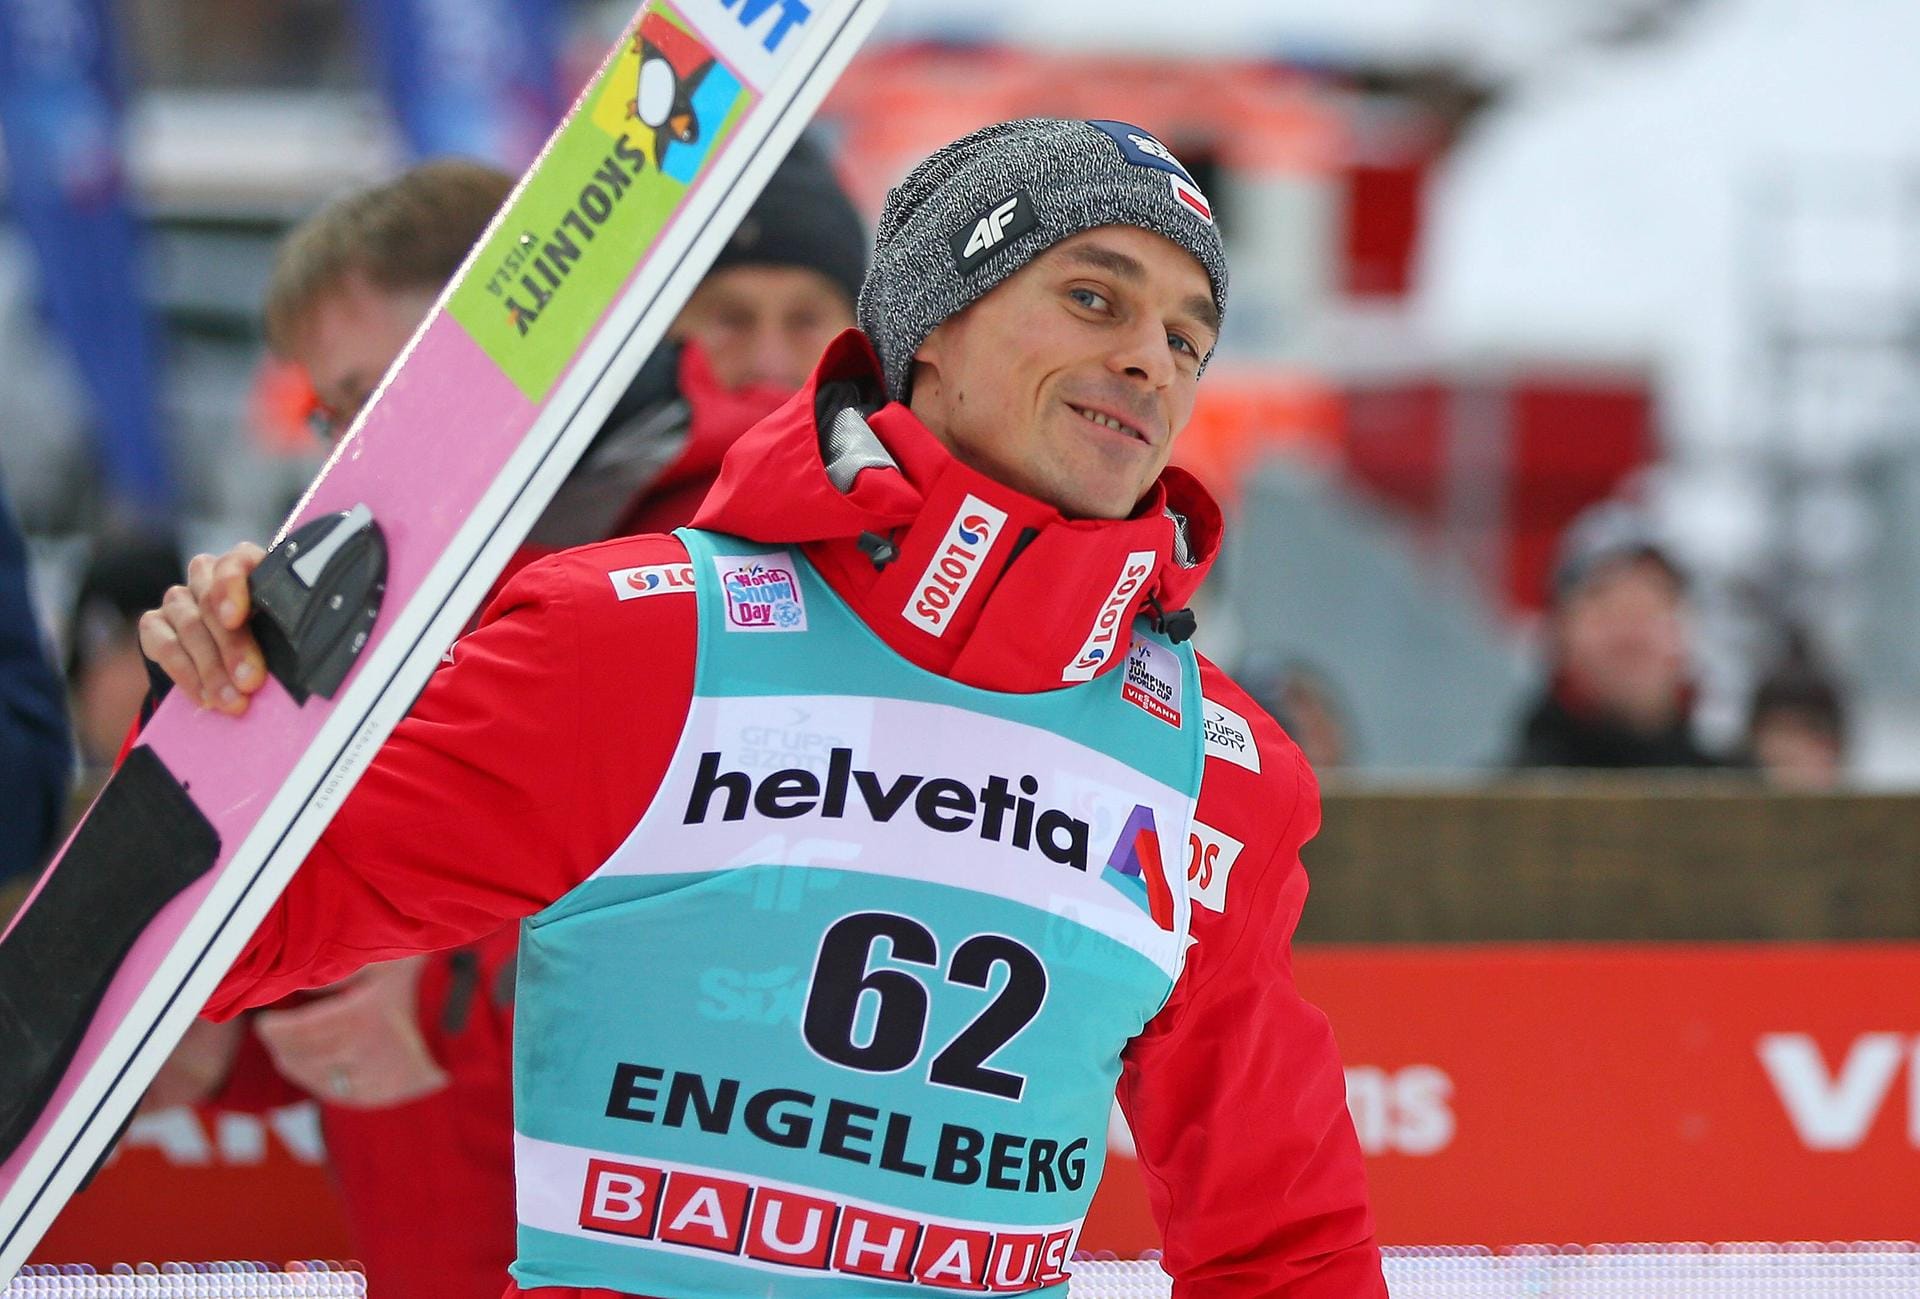 Piotr Zyla aus Polen springt eine starke Saison. Der 31-Jährige hat zwar noch kein Springen in diesem Winter gewonnen, ist jedoch konstant unter den besten Athleten vertreten. Damit liegt er auf dem zweiten Rang in der Gesamtwertung und gehört zu den Anwärtern auf den Tourneesieg.